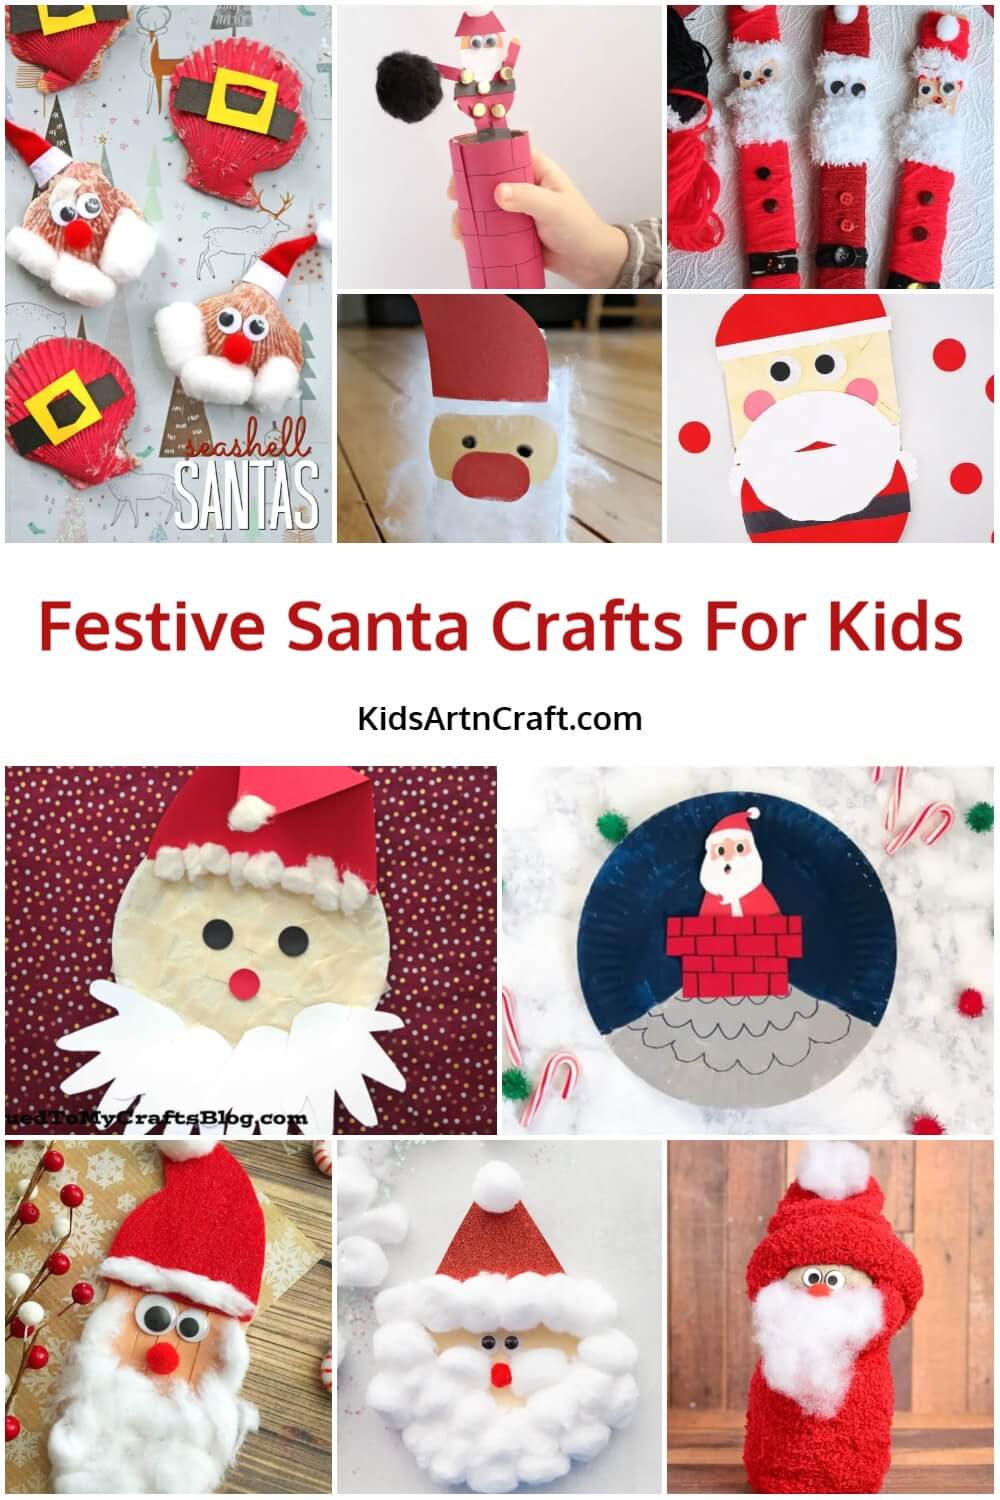  Festive Santa Crafts For Kids